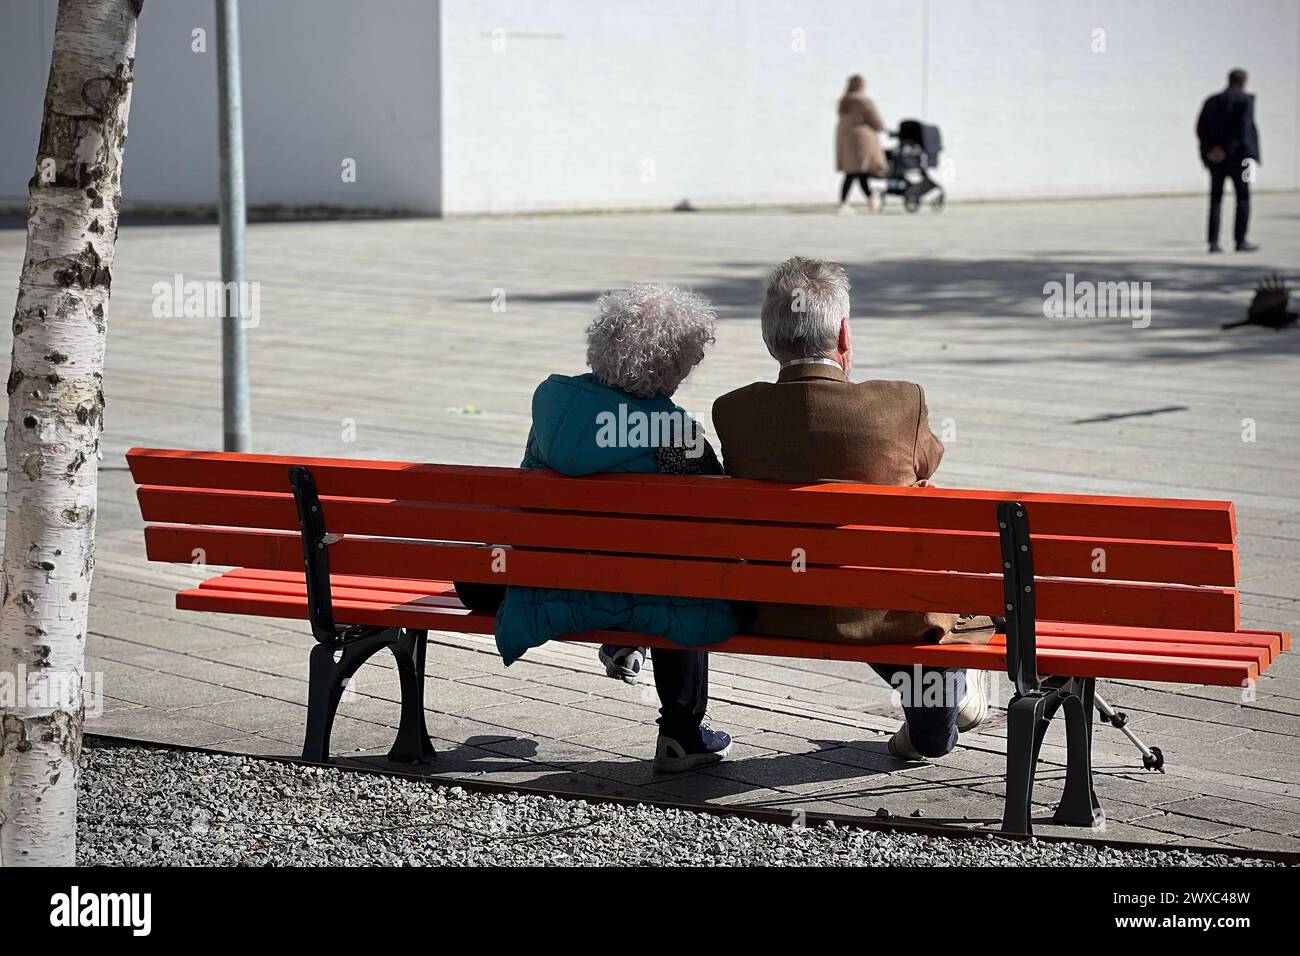 Aelteres Ehepaar-Rentner -Mann und Frau sitzen auf einer Bank im Freien. *** Elderly couple Retired man and woman sitting on a bench outdoors Stock Photo